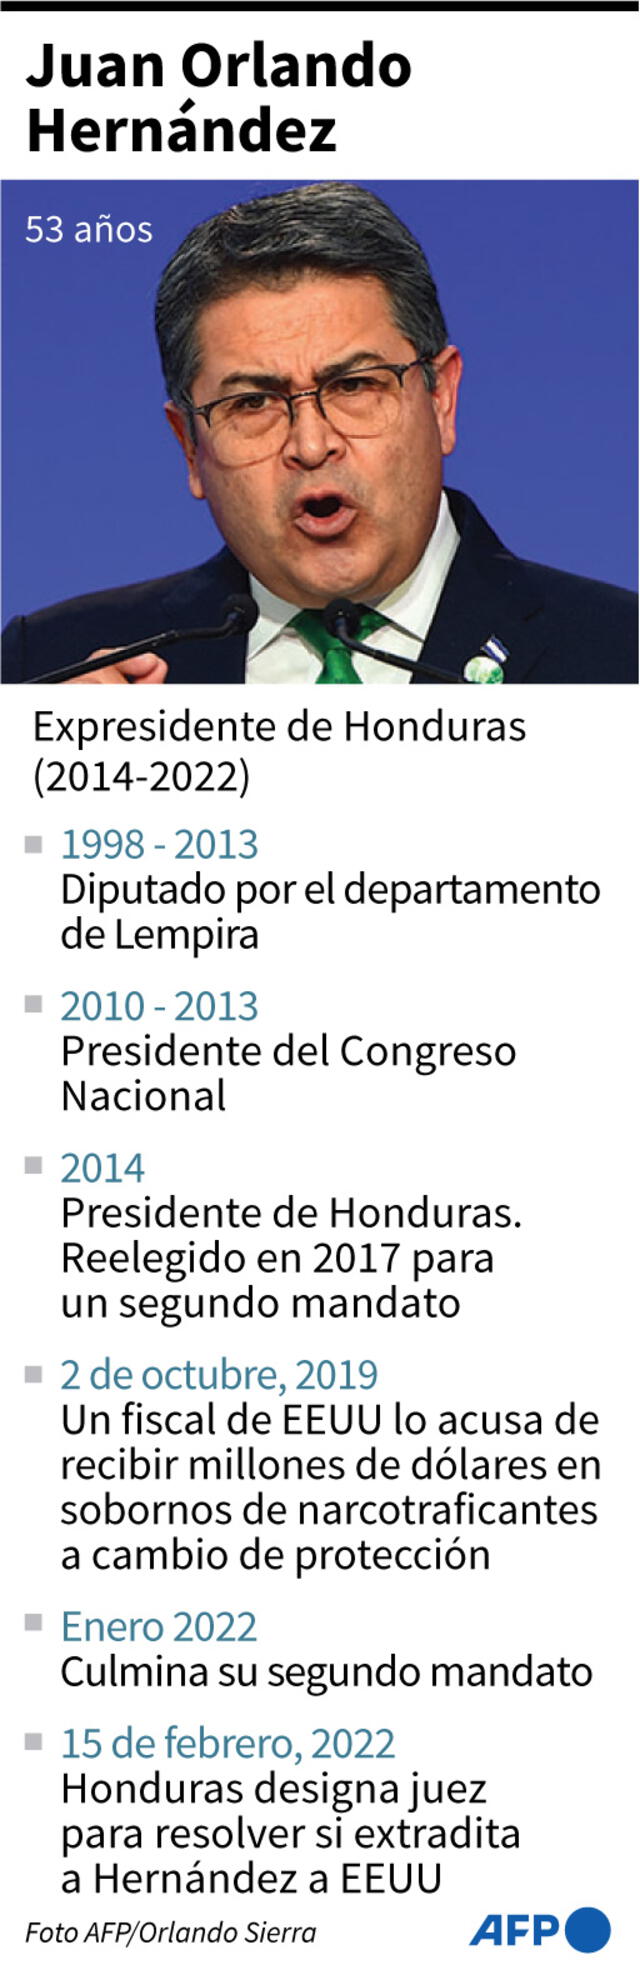 Ficha del expresidente de Honduras, Juan Orlando Hernández. Infografía: AFP